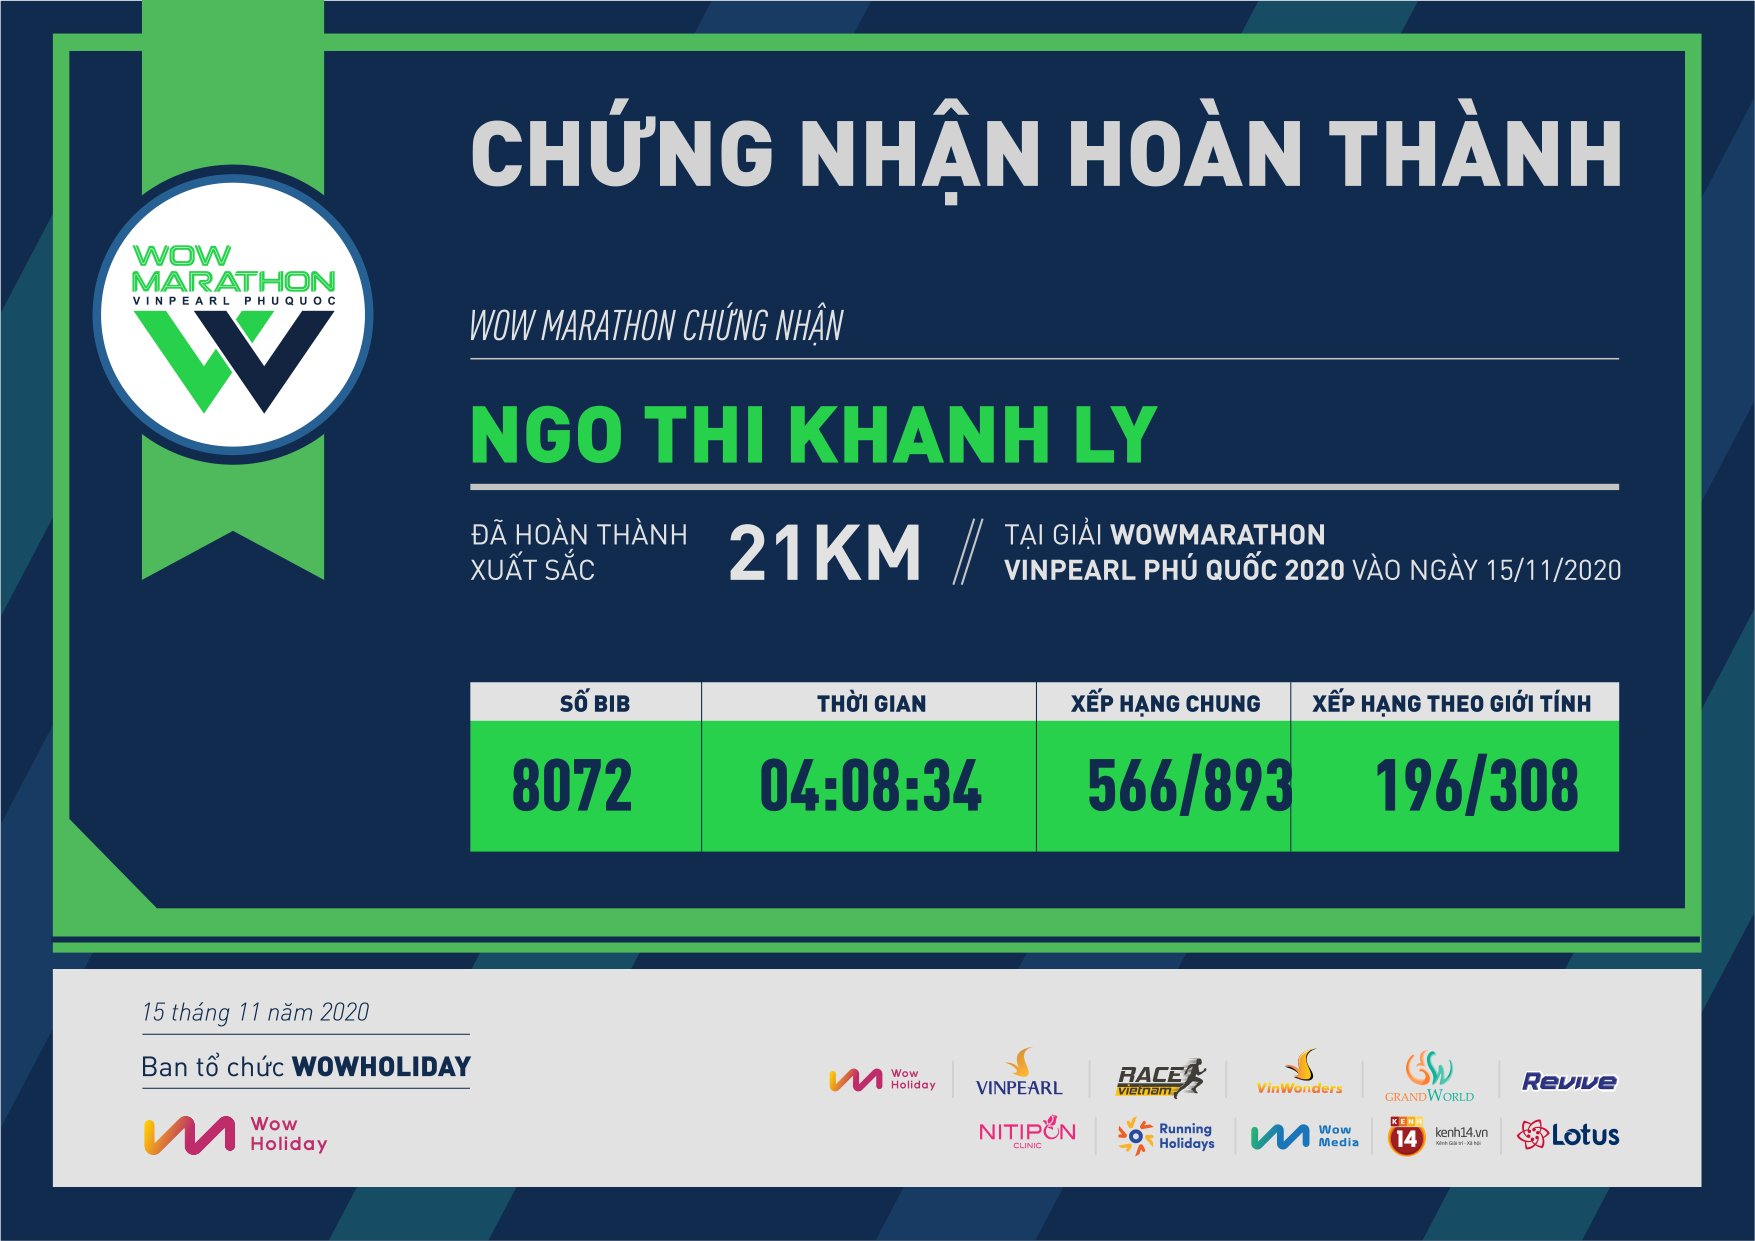 8072 - Ngo Thi Khanh Ly